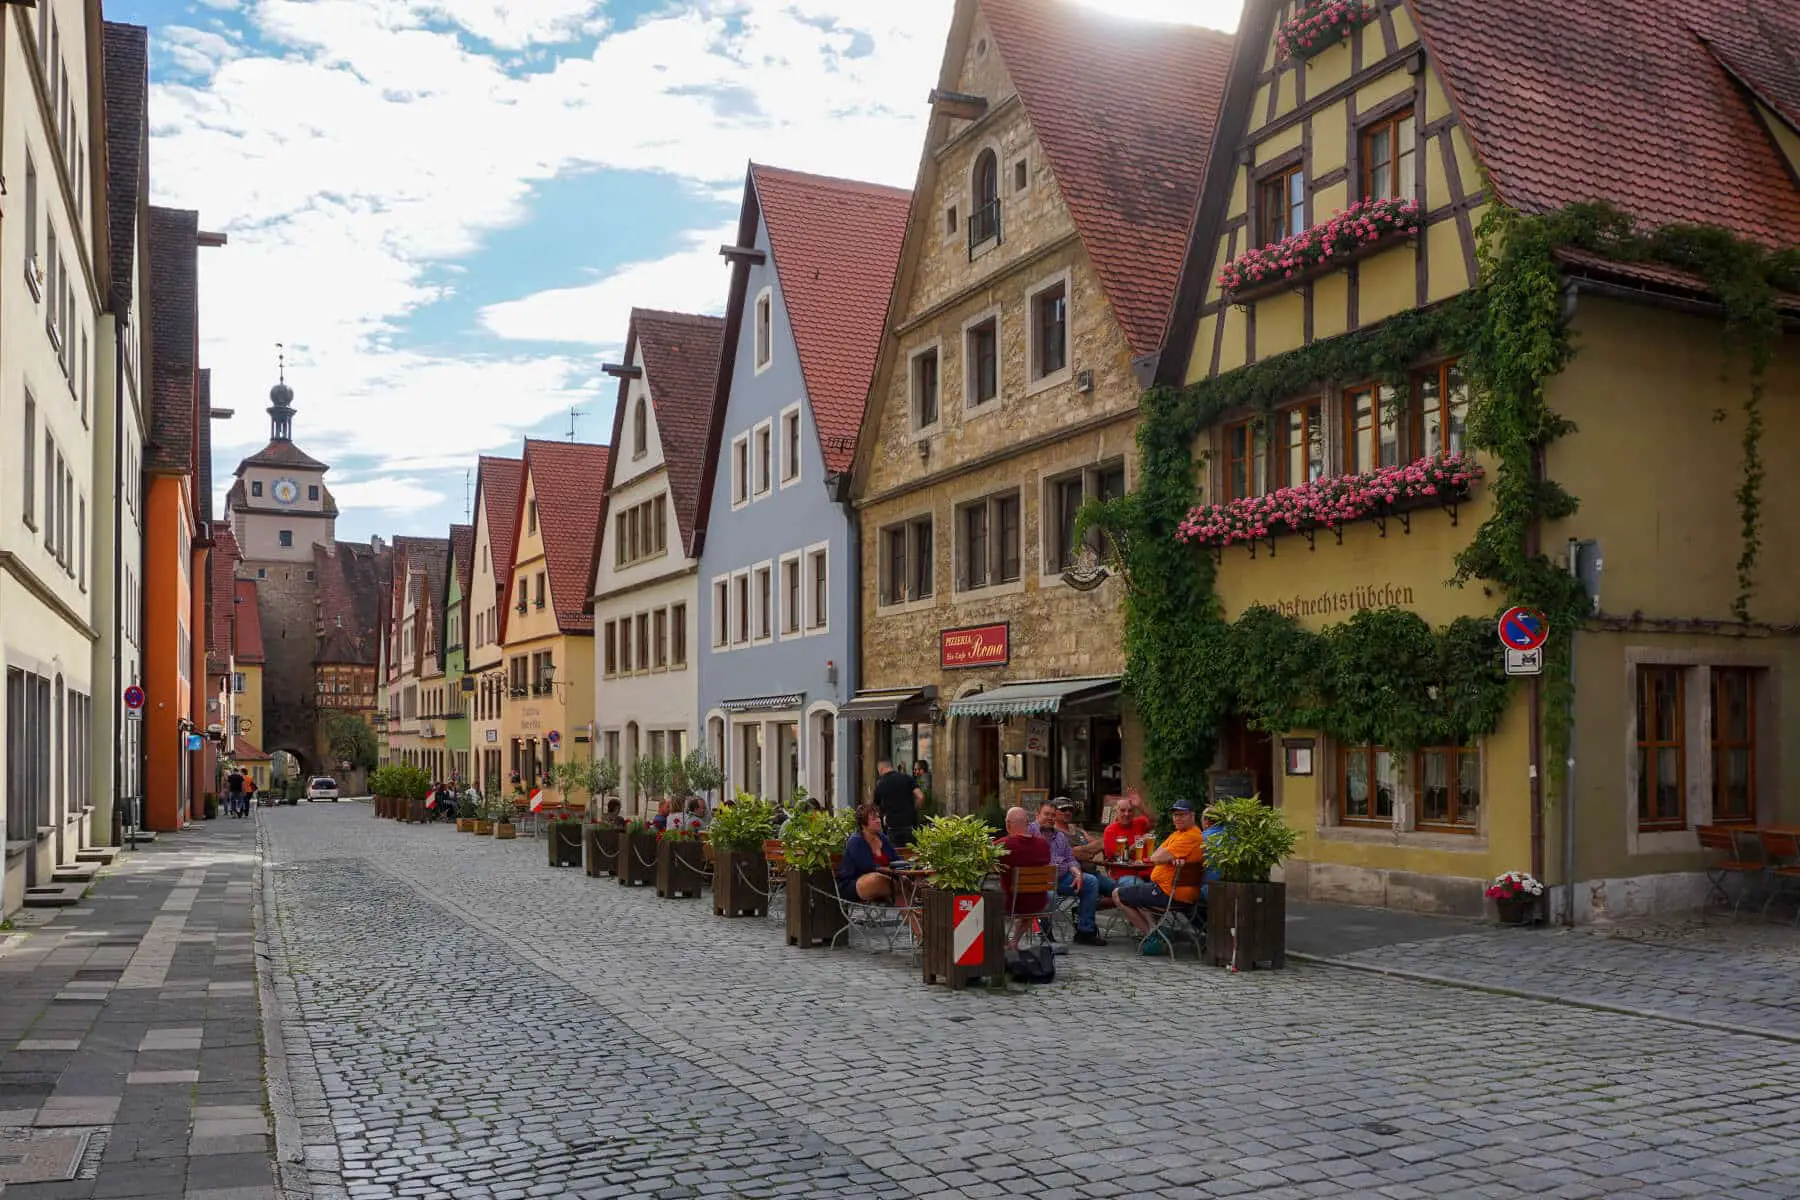 Kopfsteinpflastergassen in der Altstadt von Rothenburg ob der Tauber